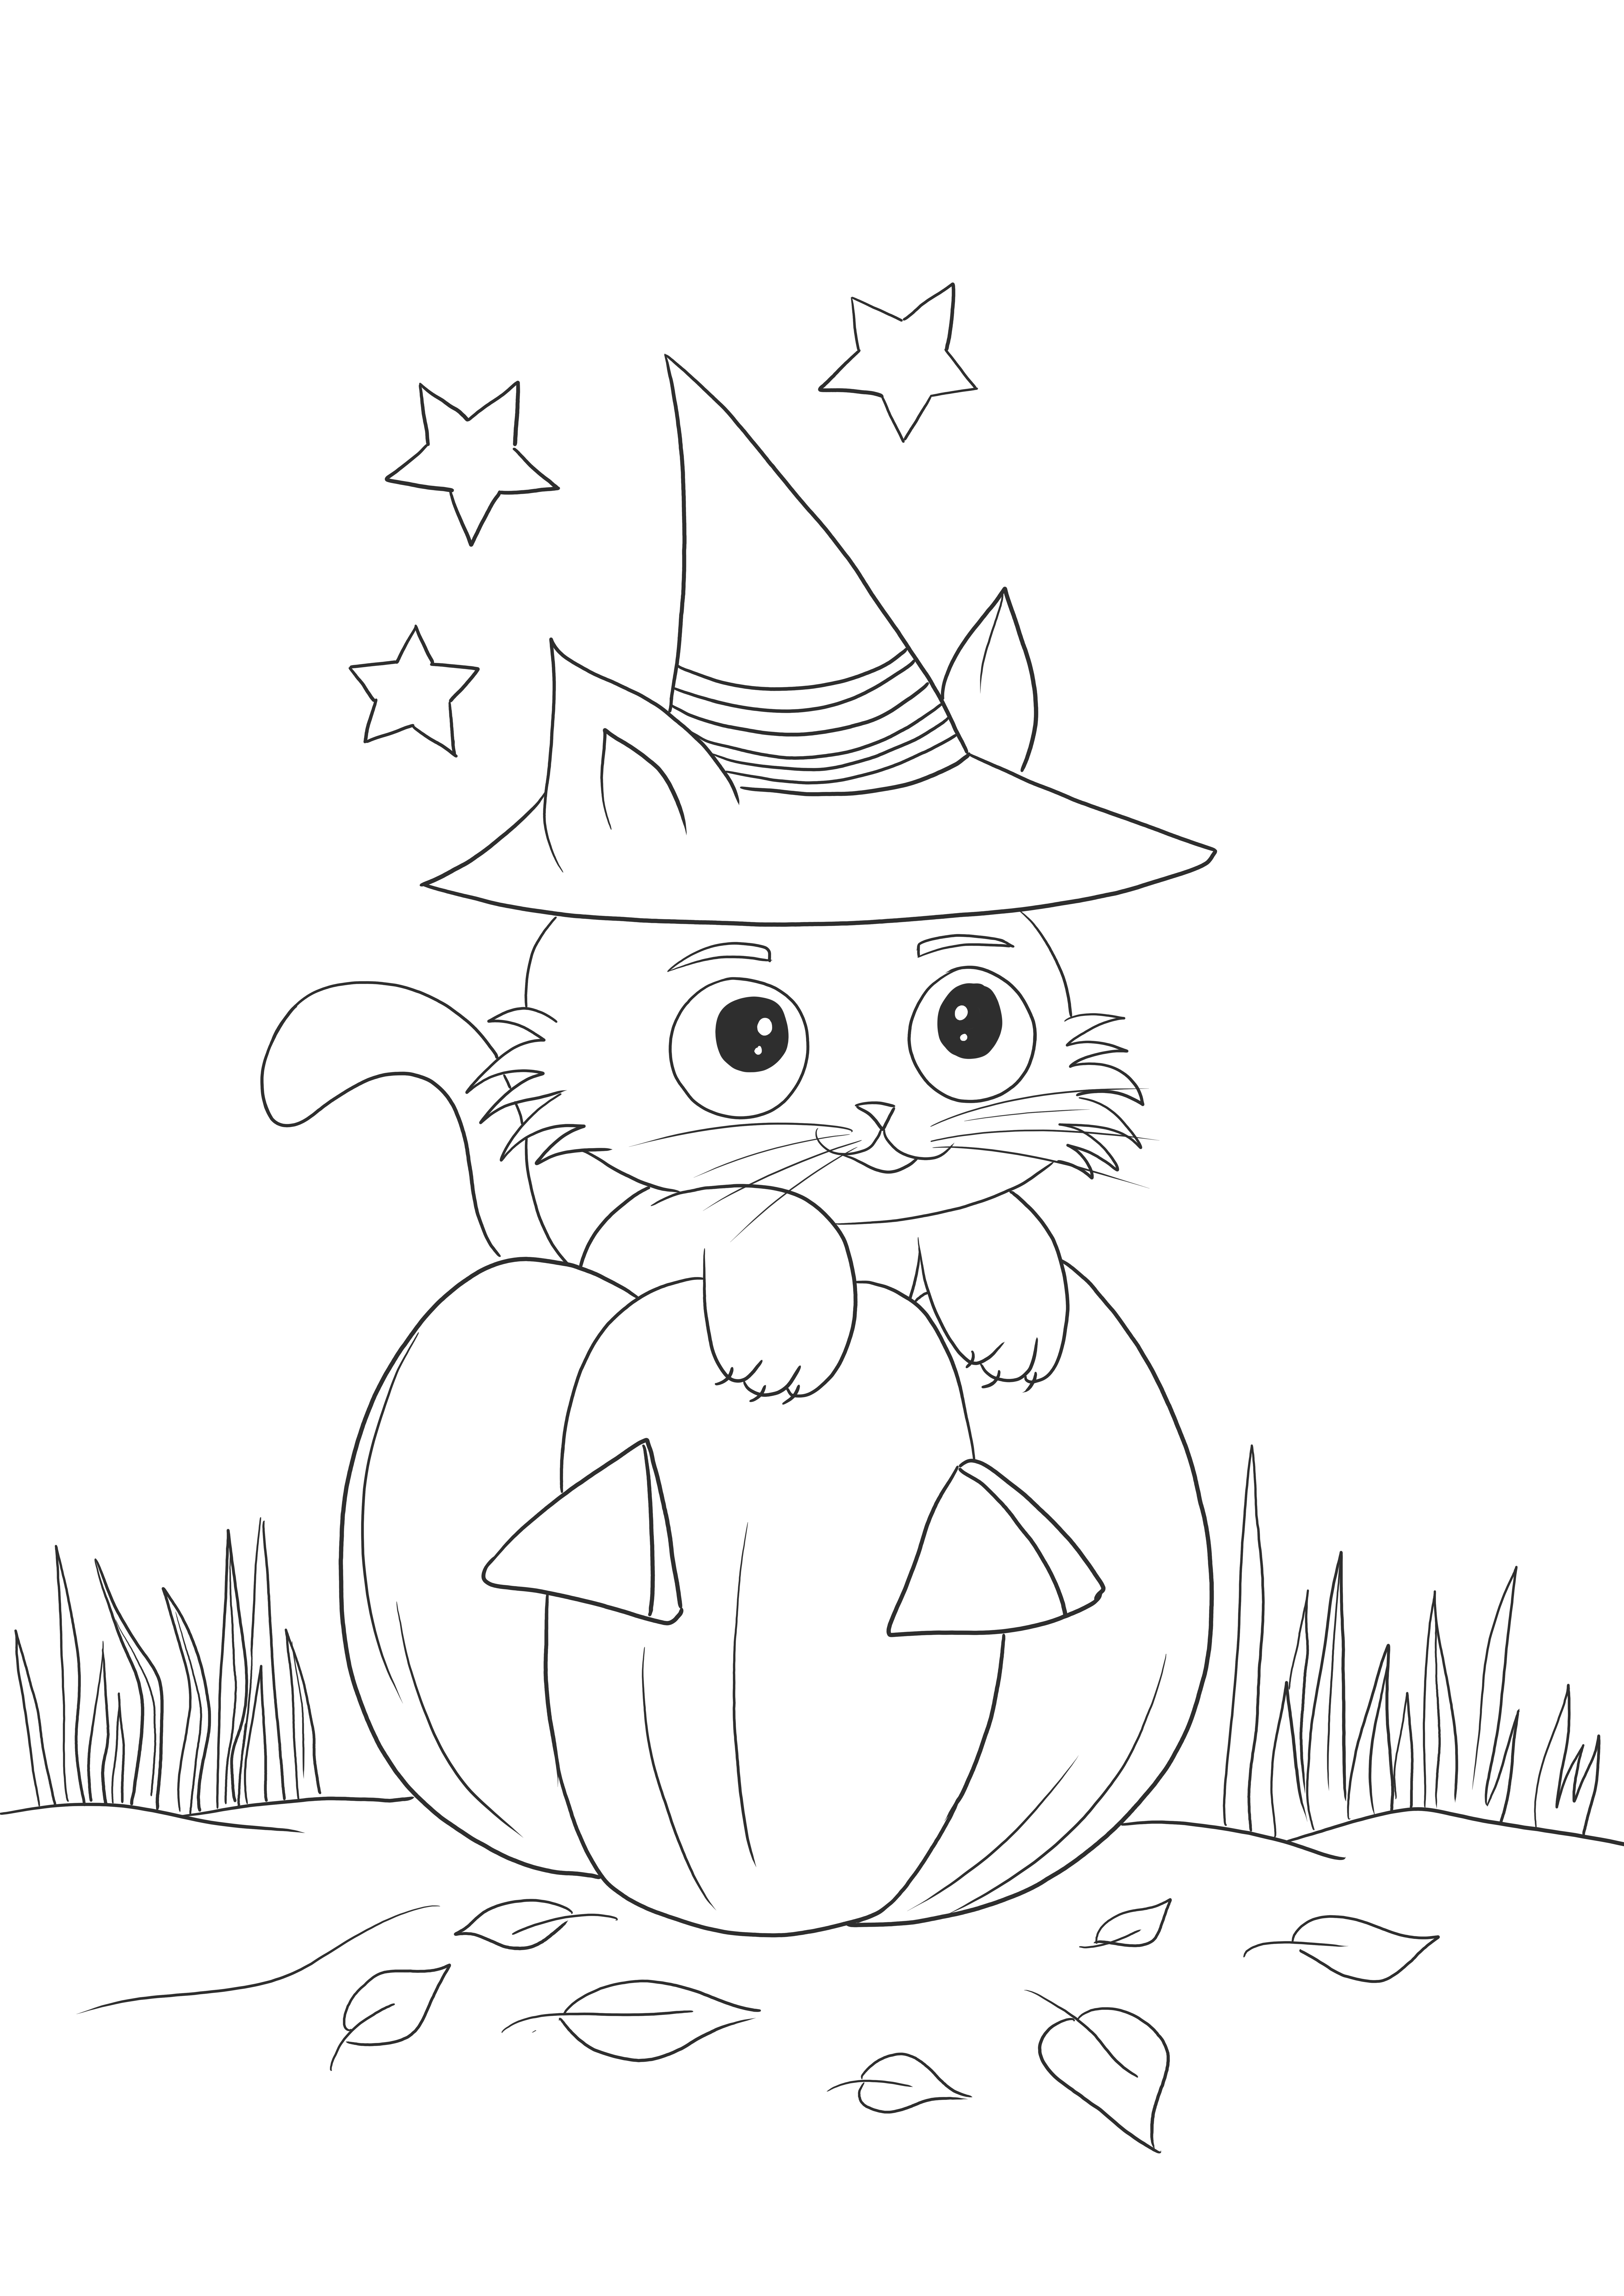 Imagen para imprimir gratis de Gato calabaza super tierno para celebración de Halloween